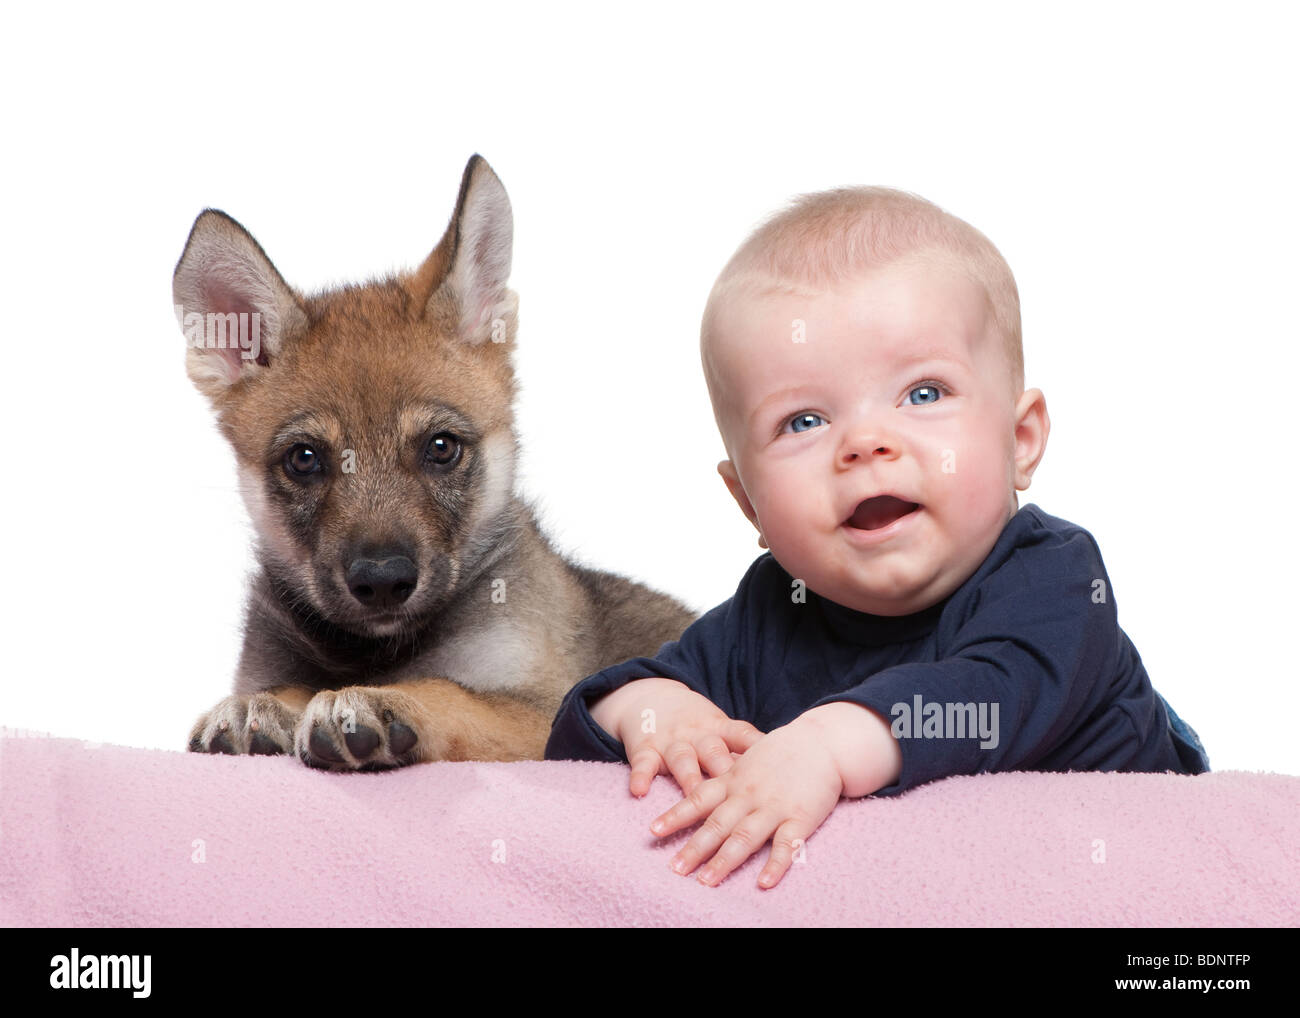 Retrato de niño con los jóvenes europeos wolf delante de un fondo blanco, Foto de estudio Foto de stock